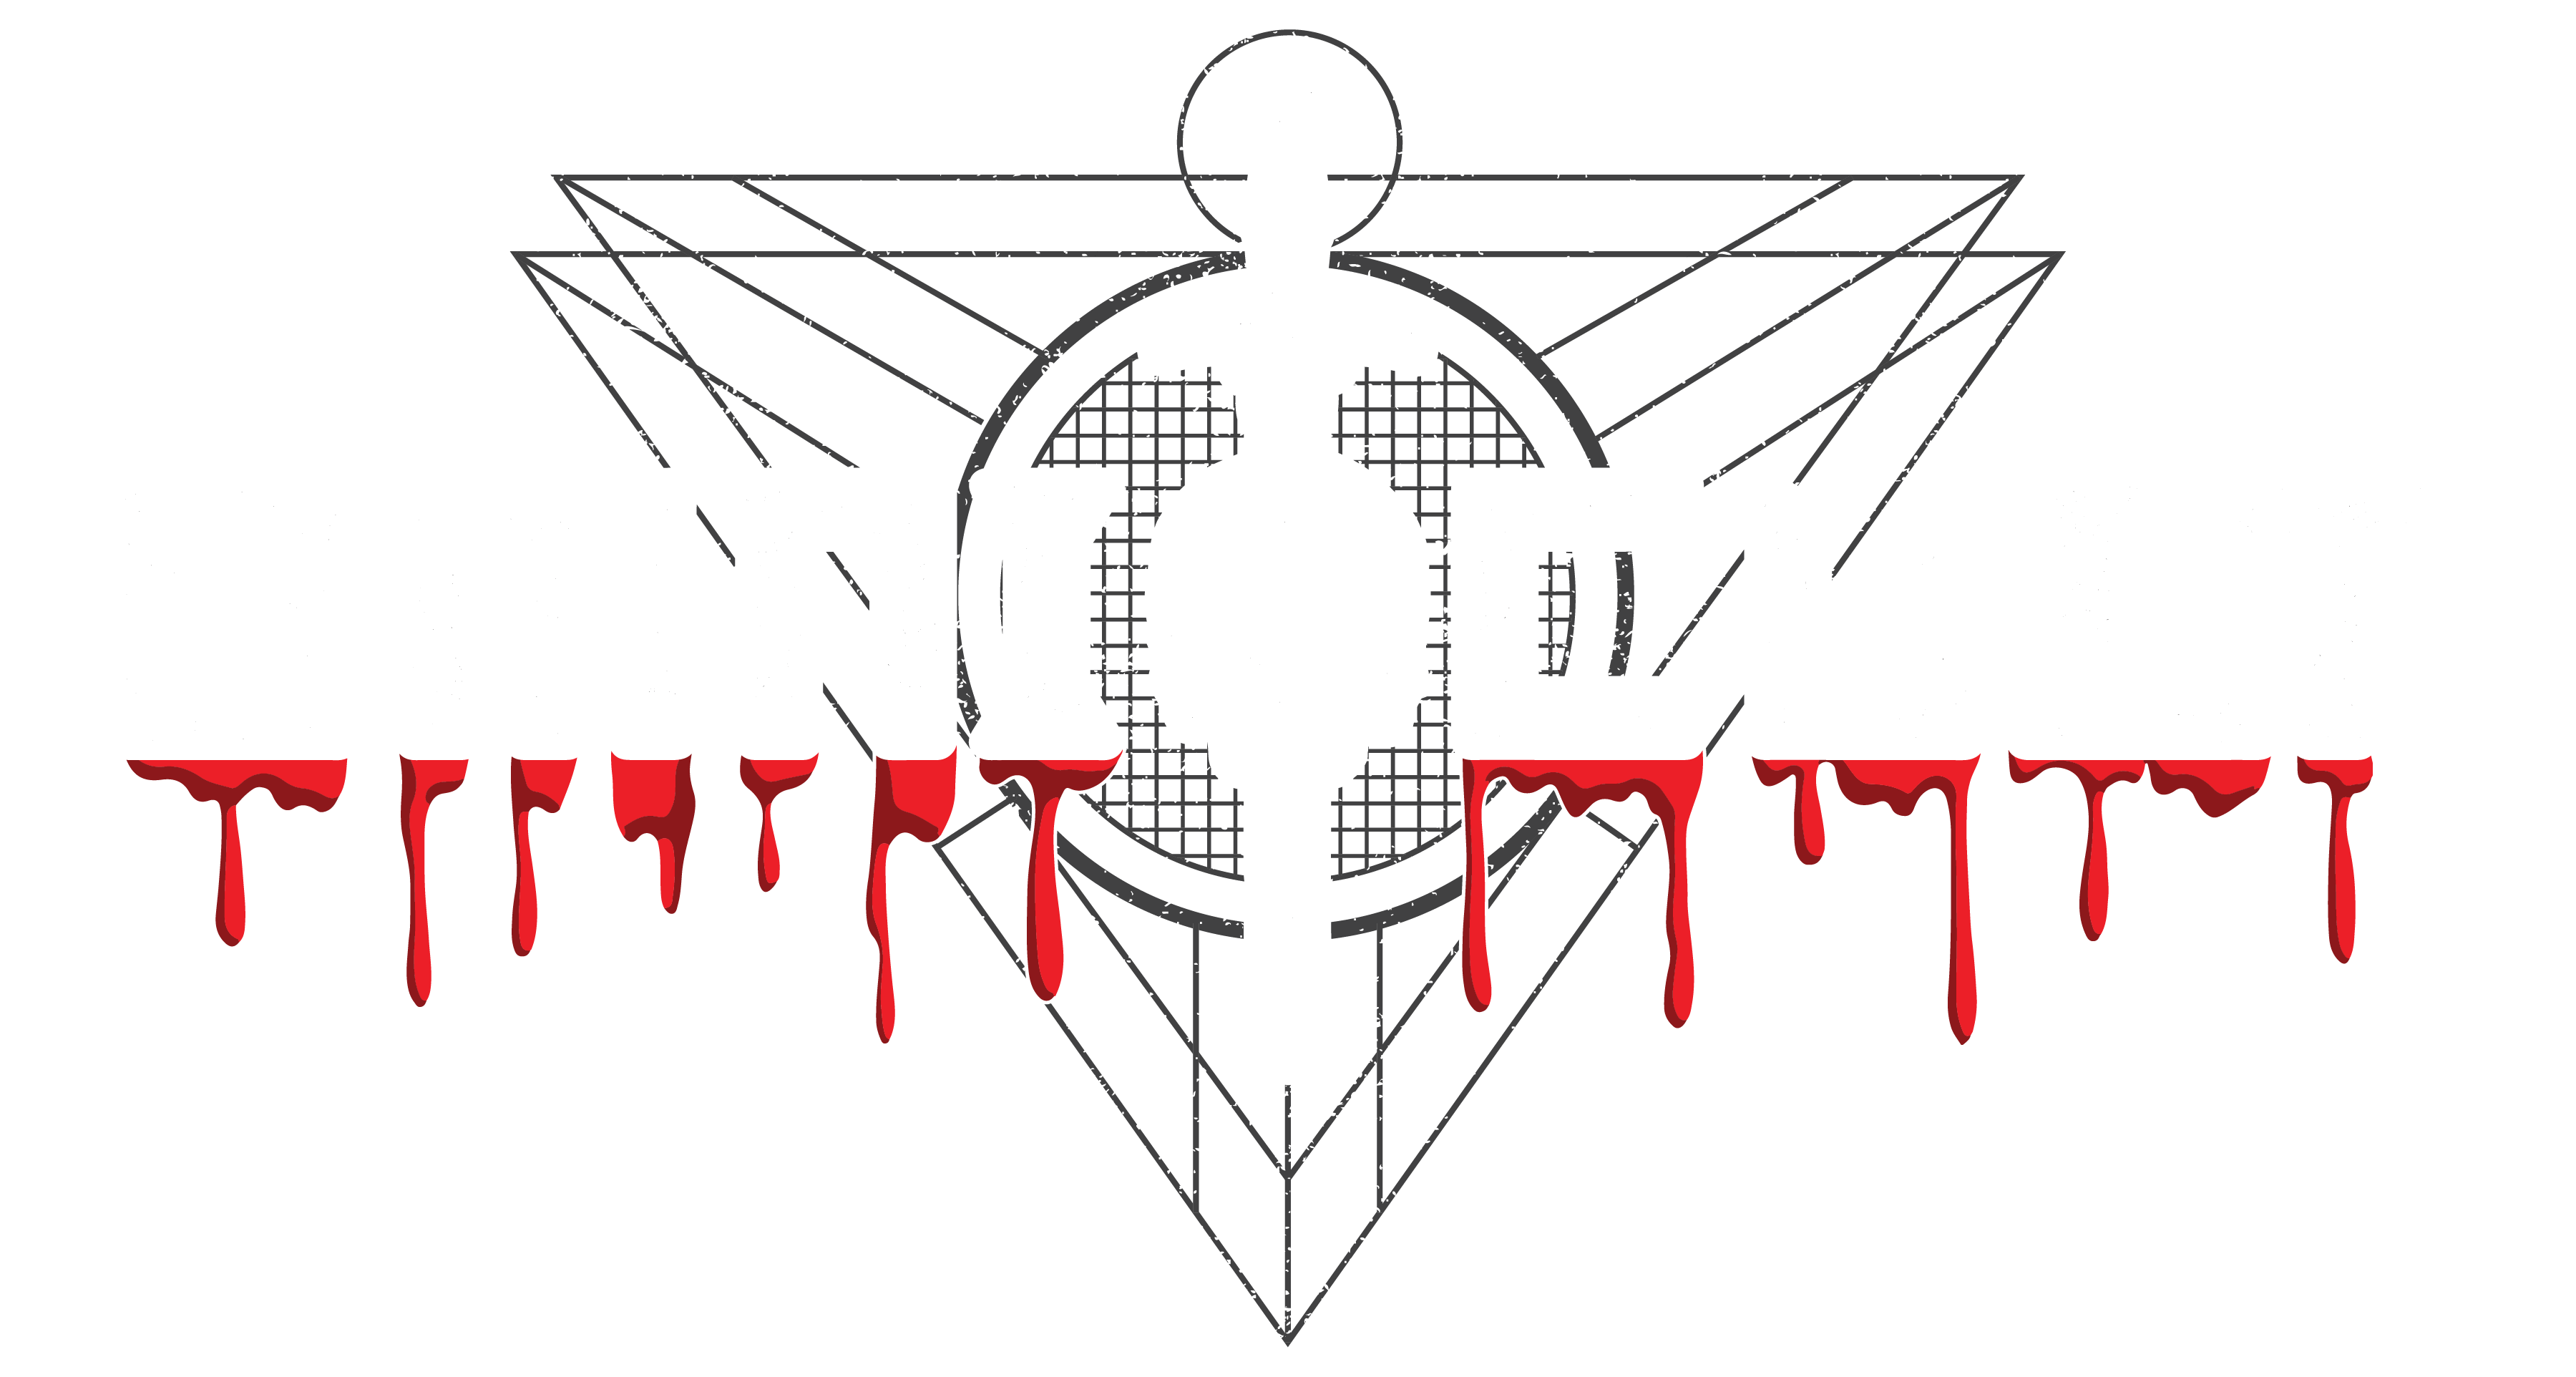 Omni-Cult